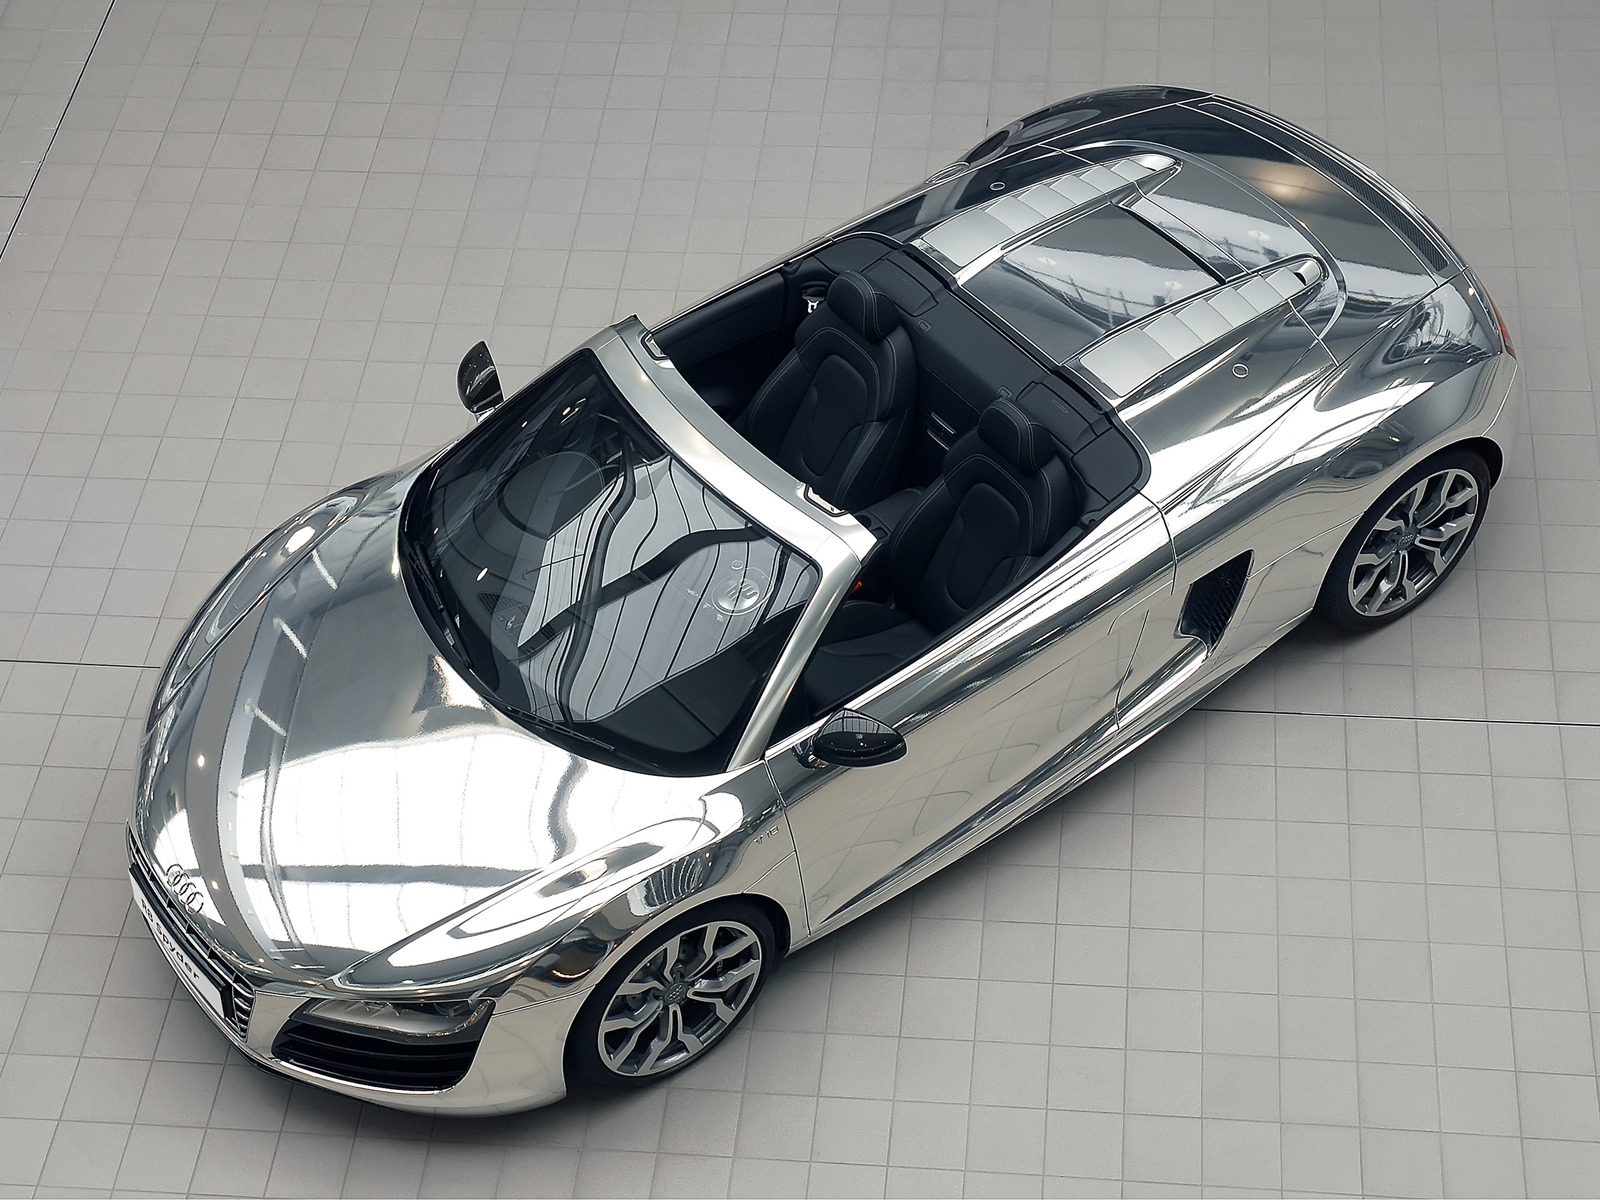 Audi R8 V10 Spyder Chrome for 1600 x 1200 resolution